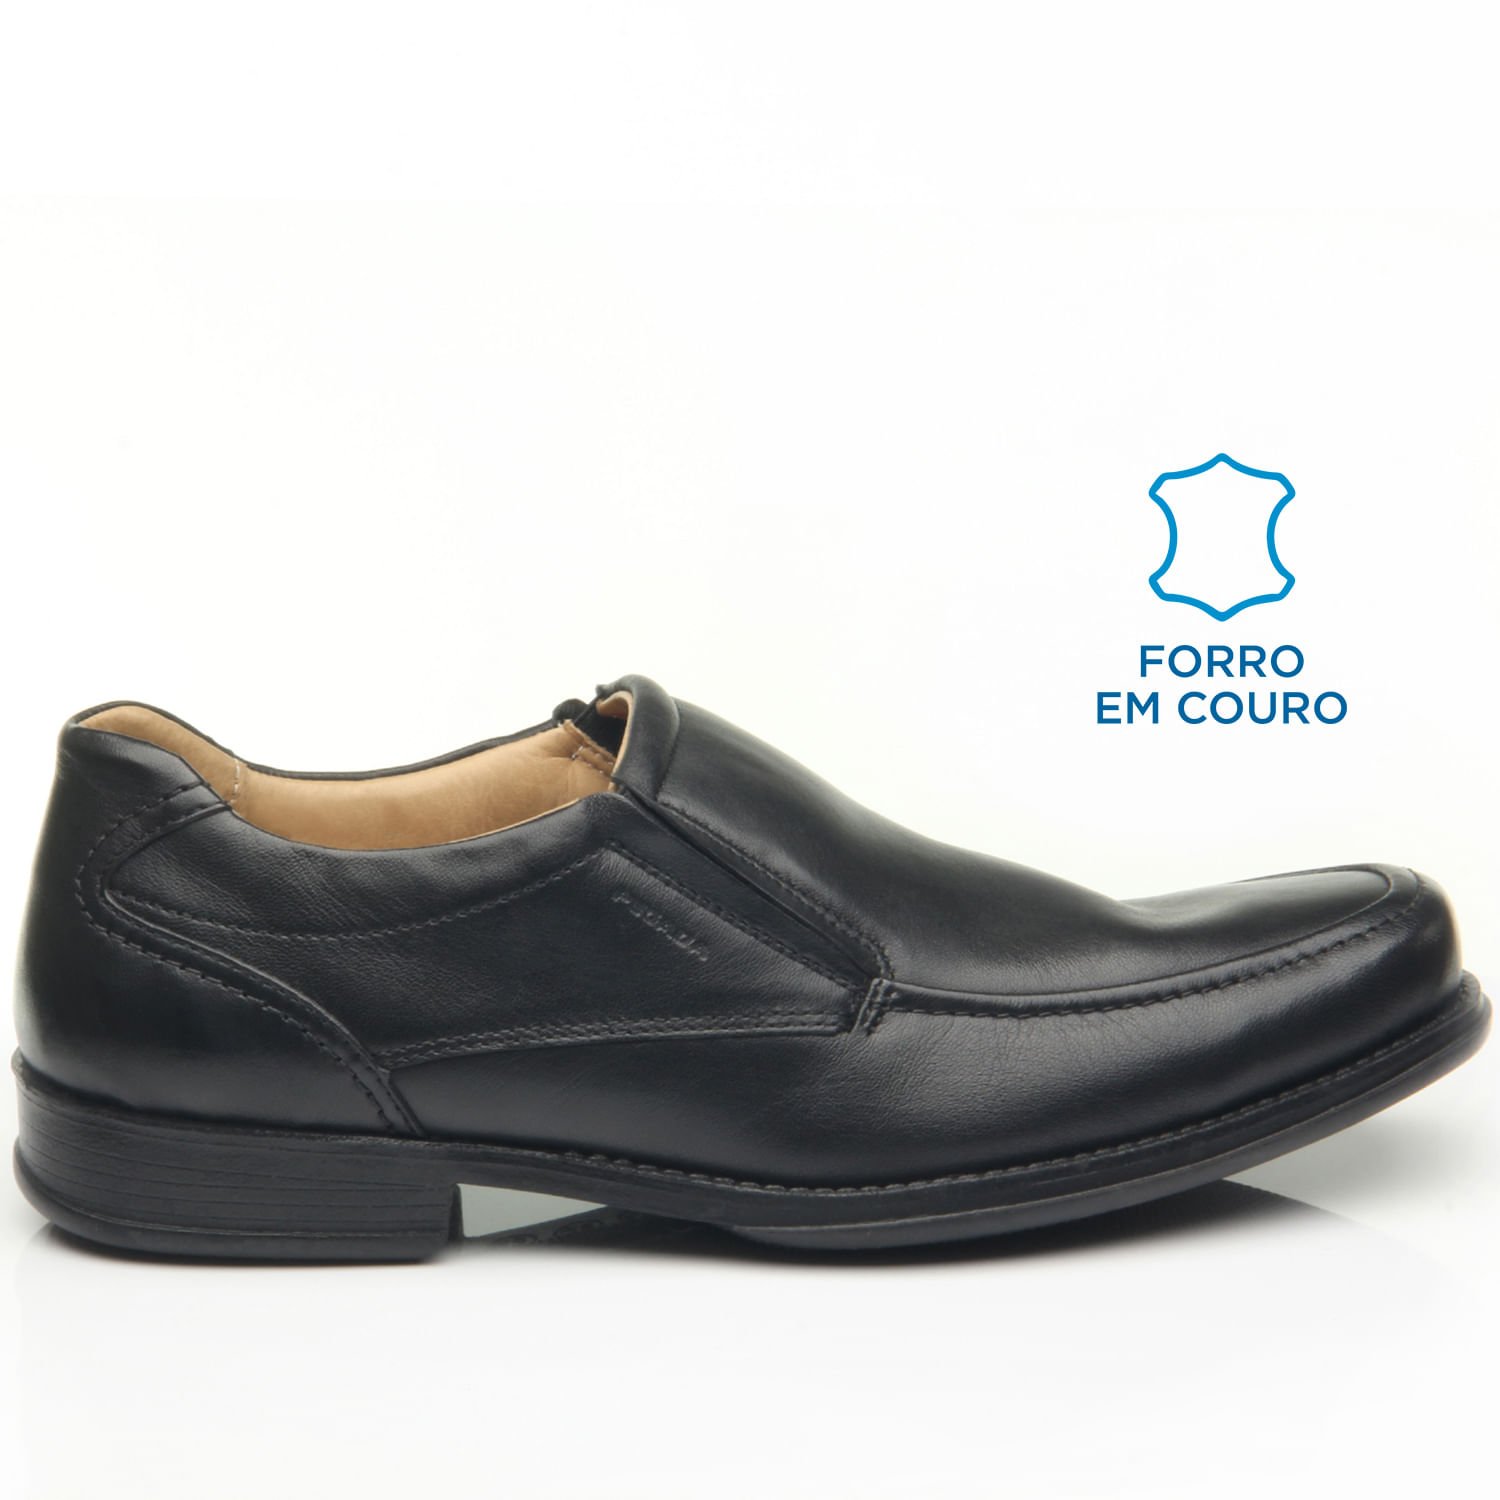 Sapato Social Pegada Masculino em Couro Preto 123451-01 Preto 1